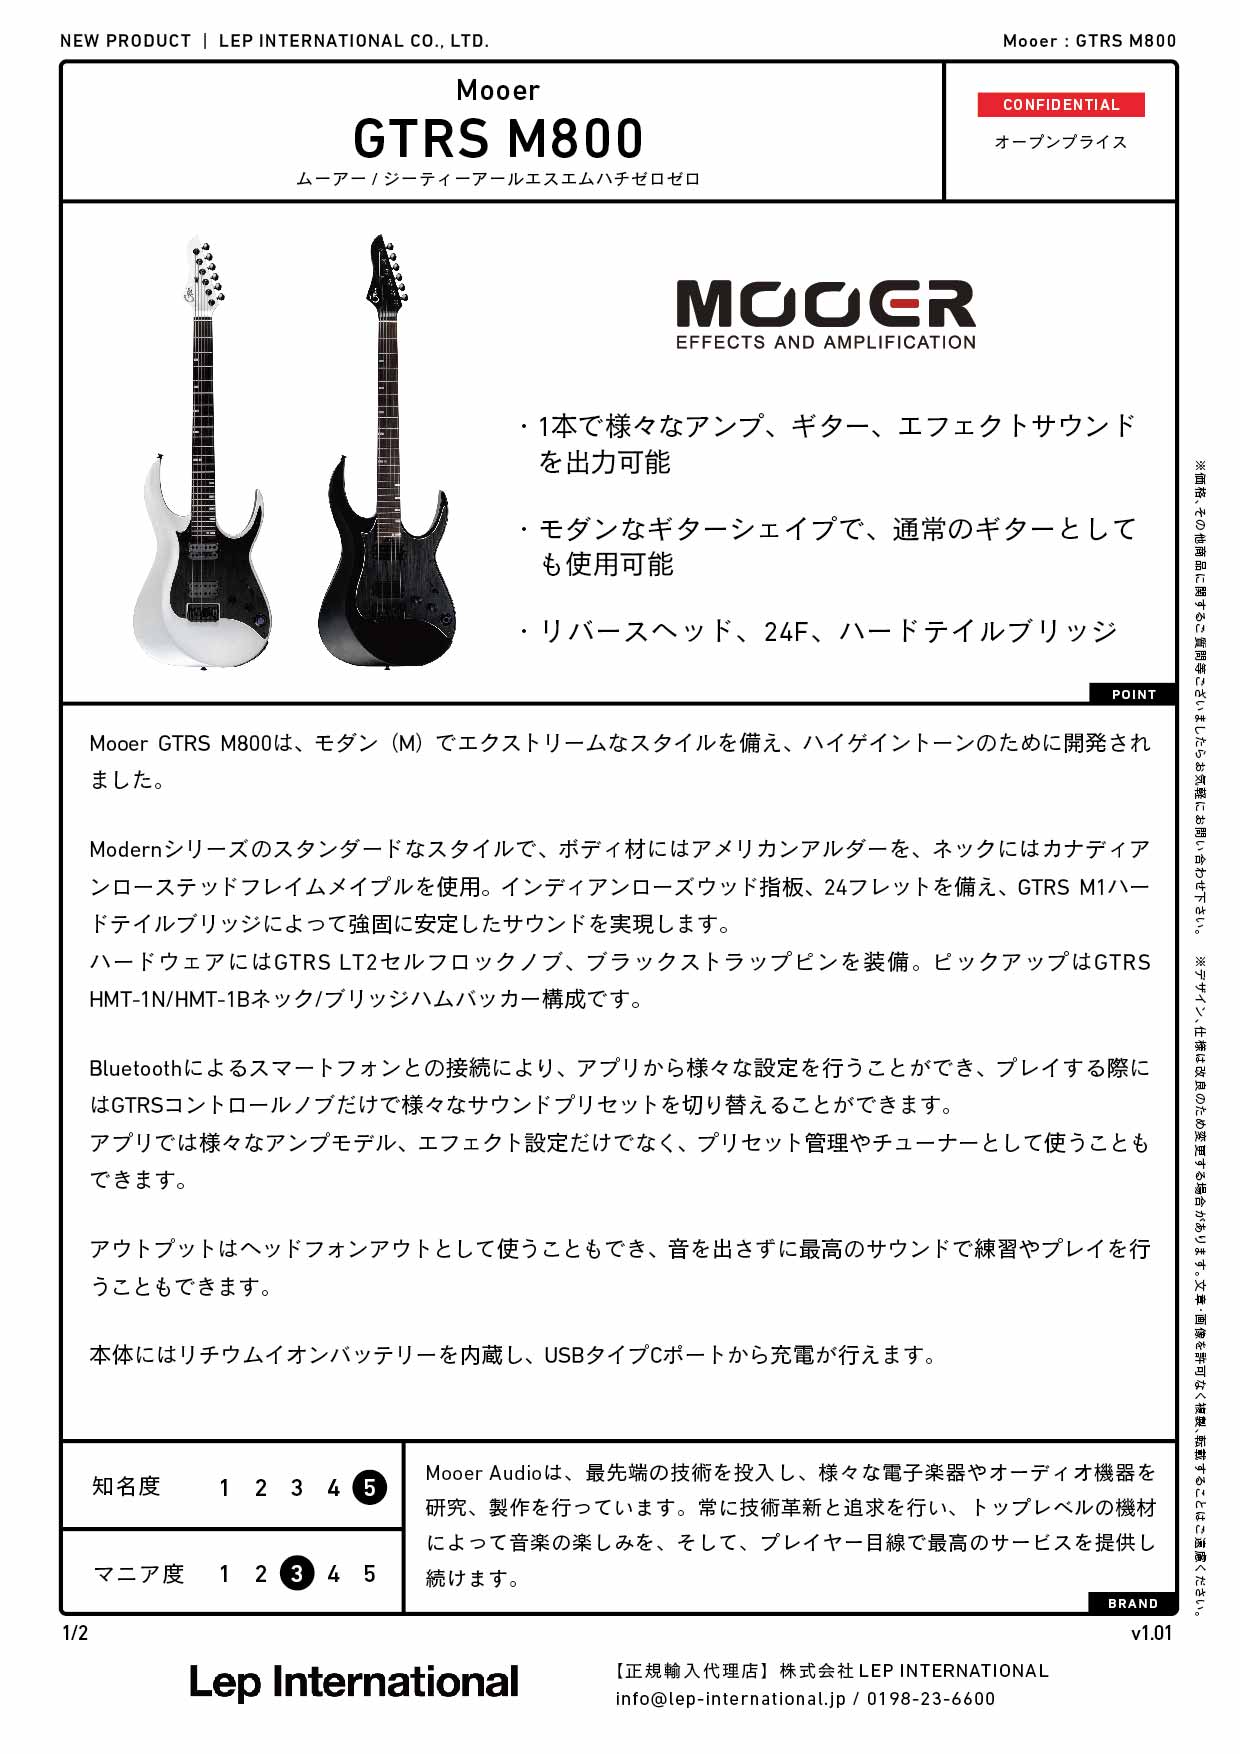 Mooer / GTRS M800